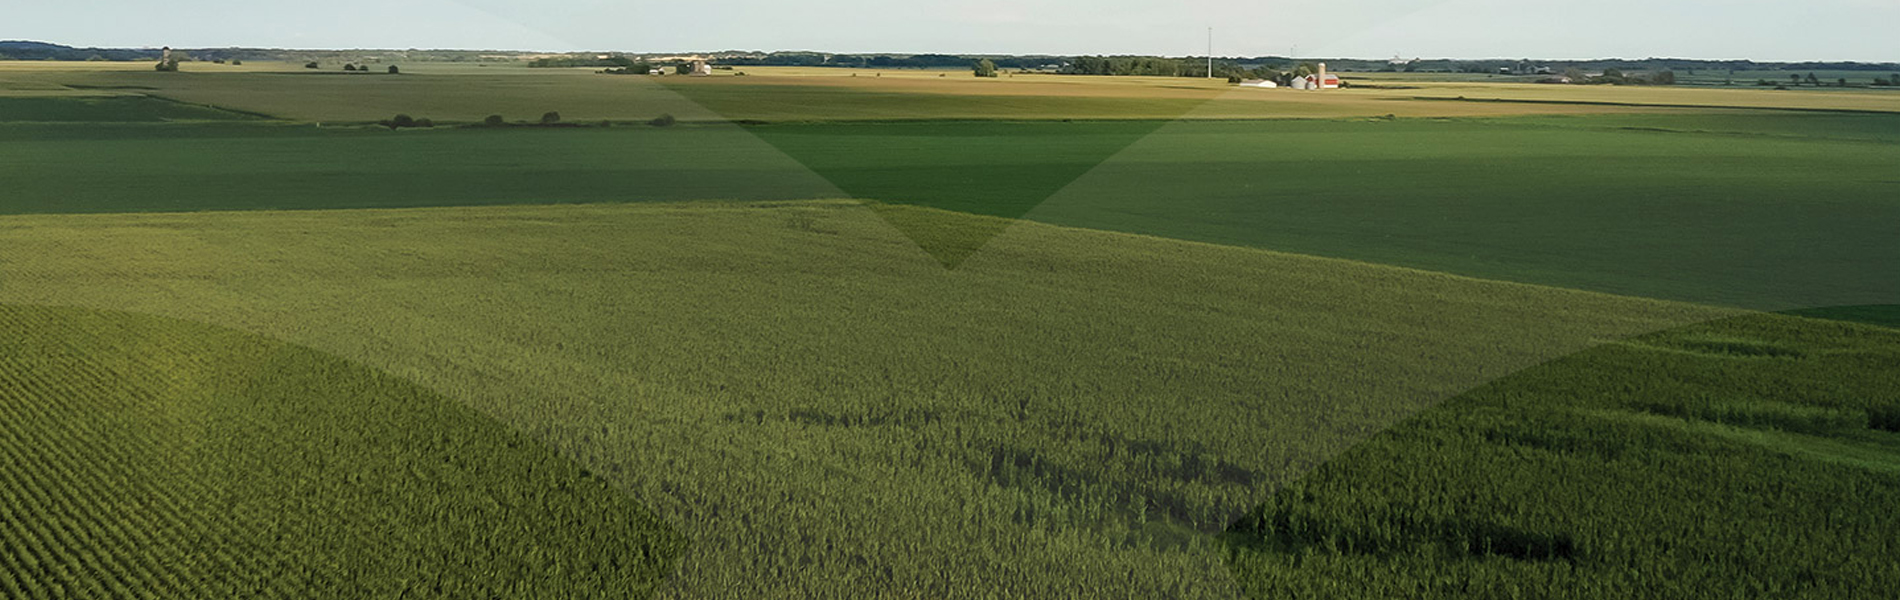 Image of a sprawling farm field